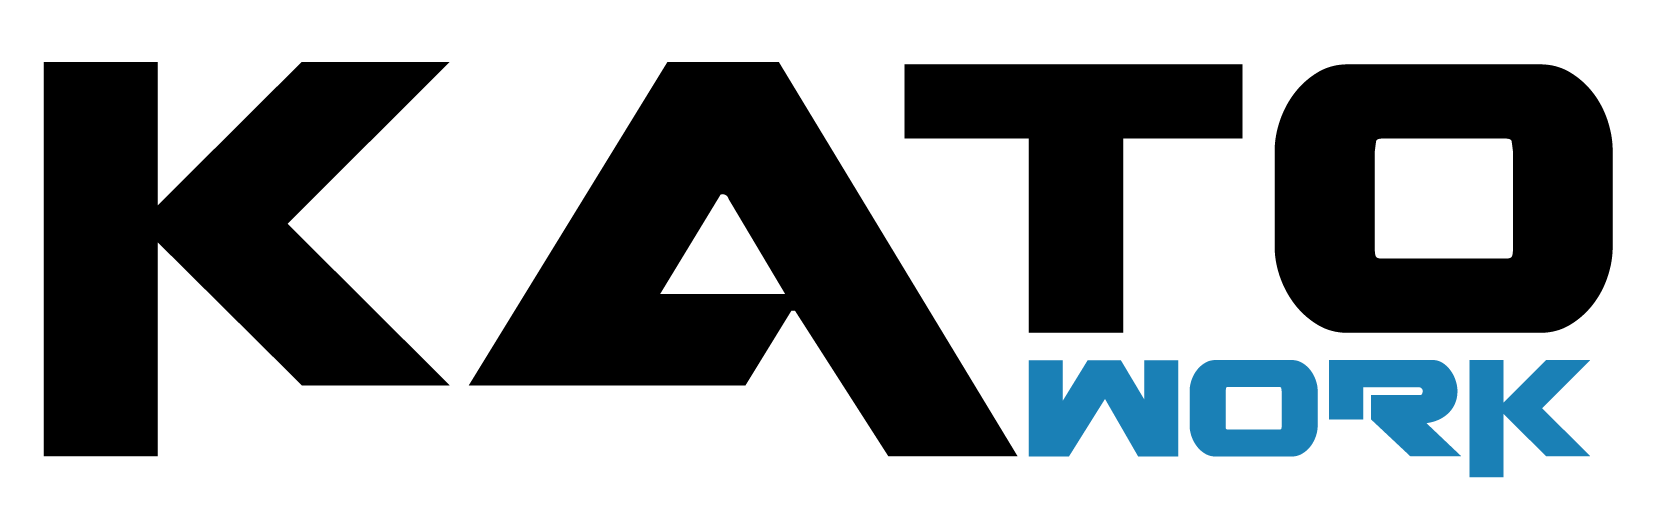 Katowork-logo-large